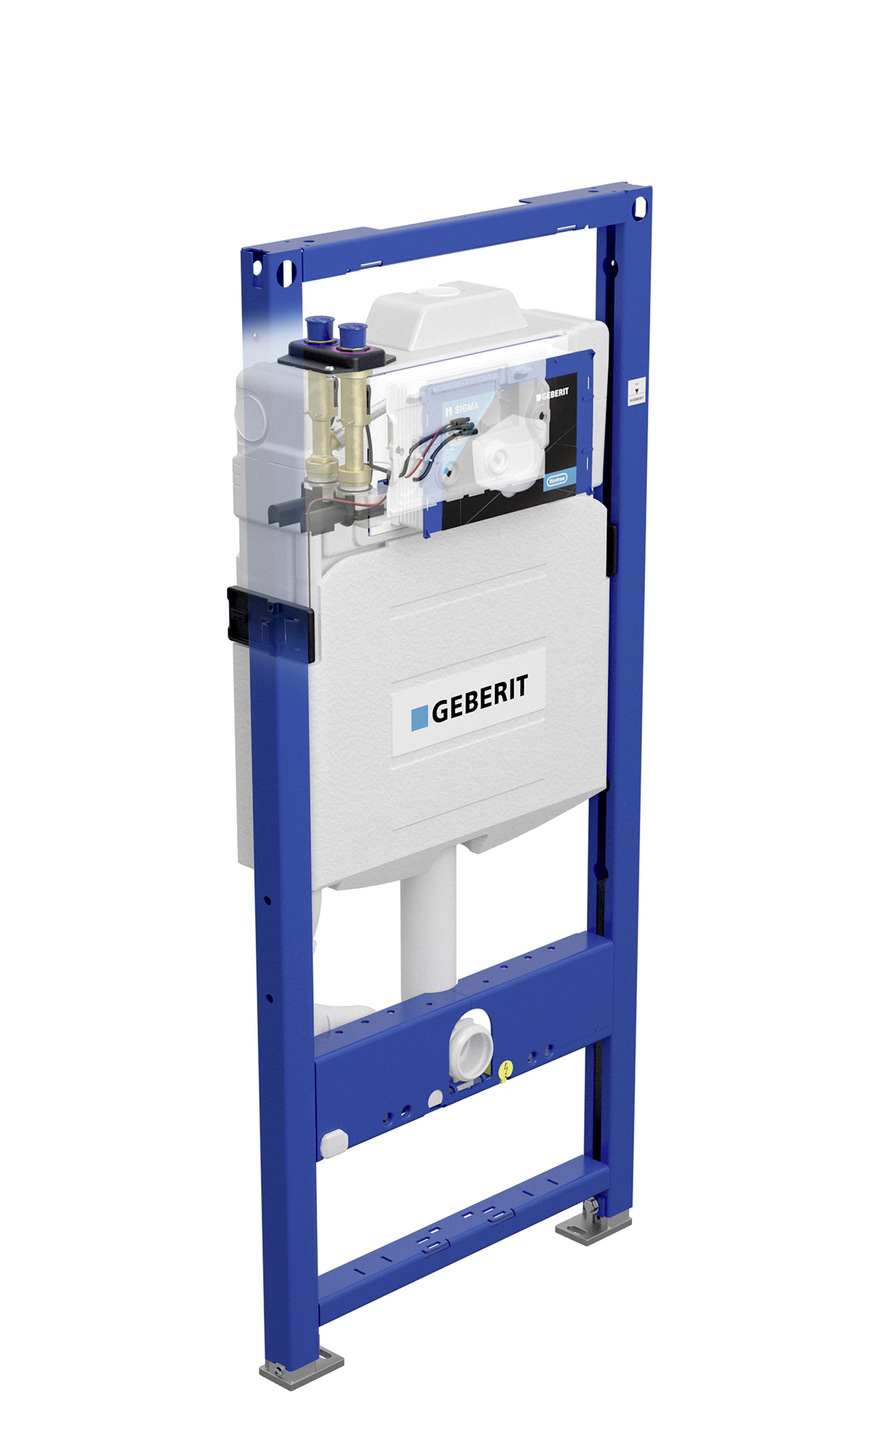 Der Sigma Unterputz-Spülkasten von Geberit ist ab April 2021 auch mit integrierter Hygienespülung erhältlich.